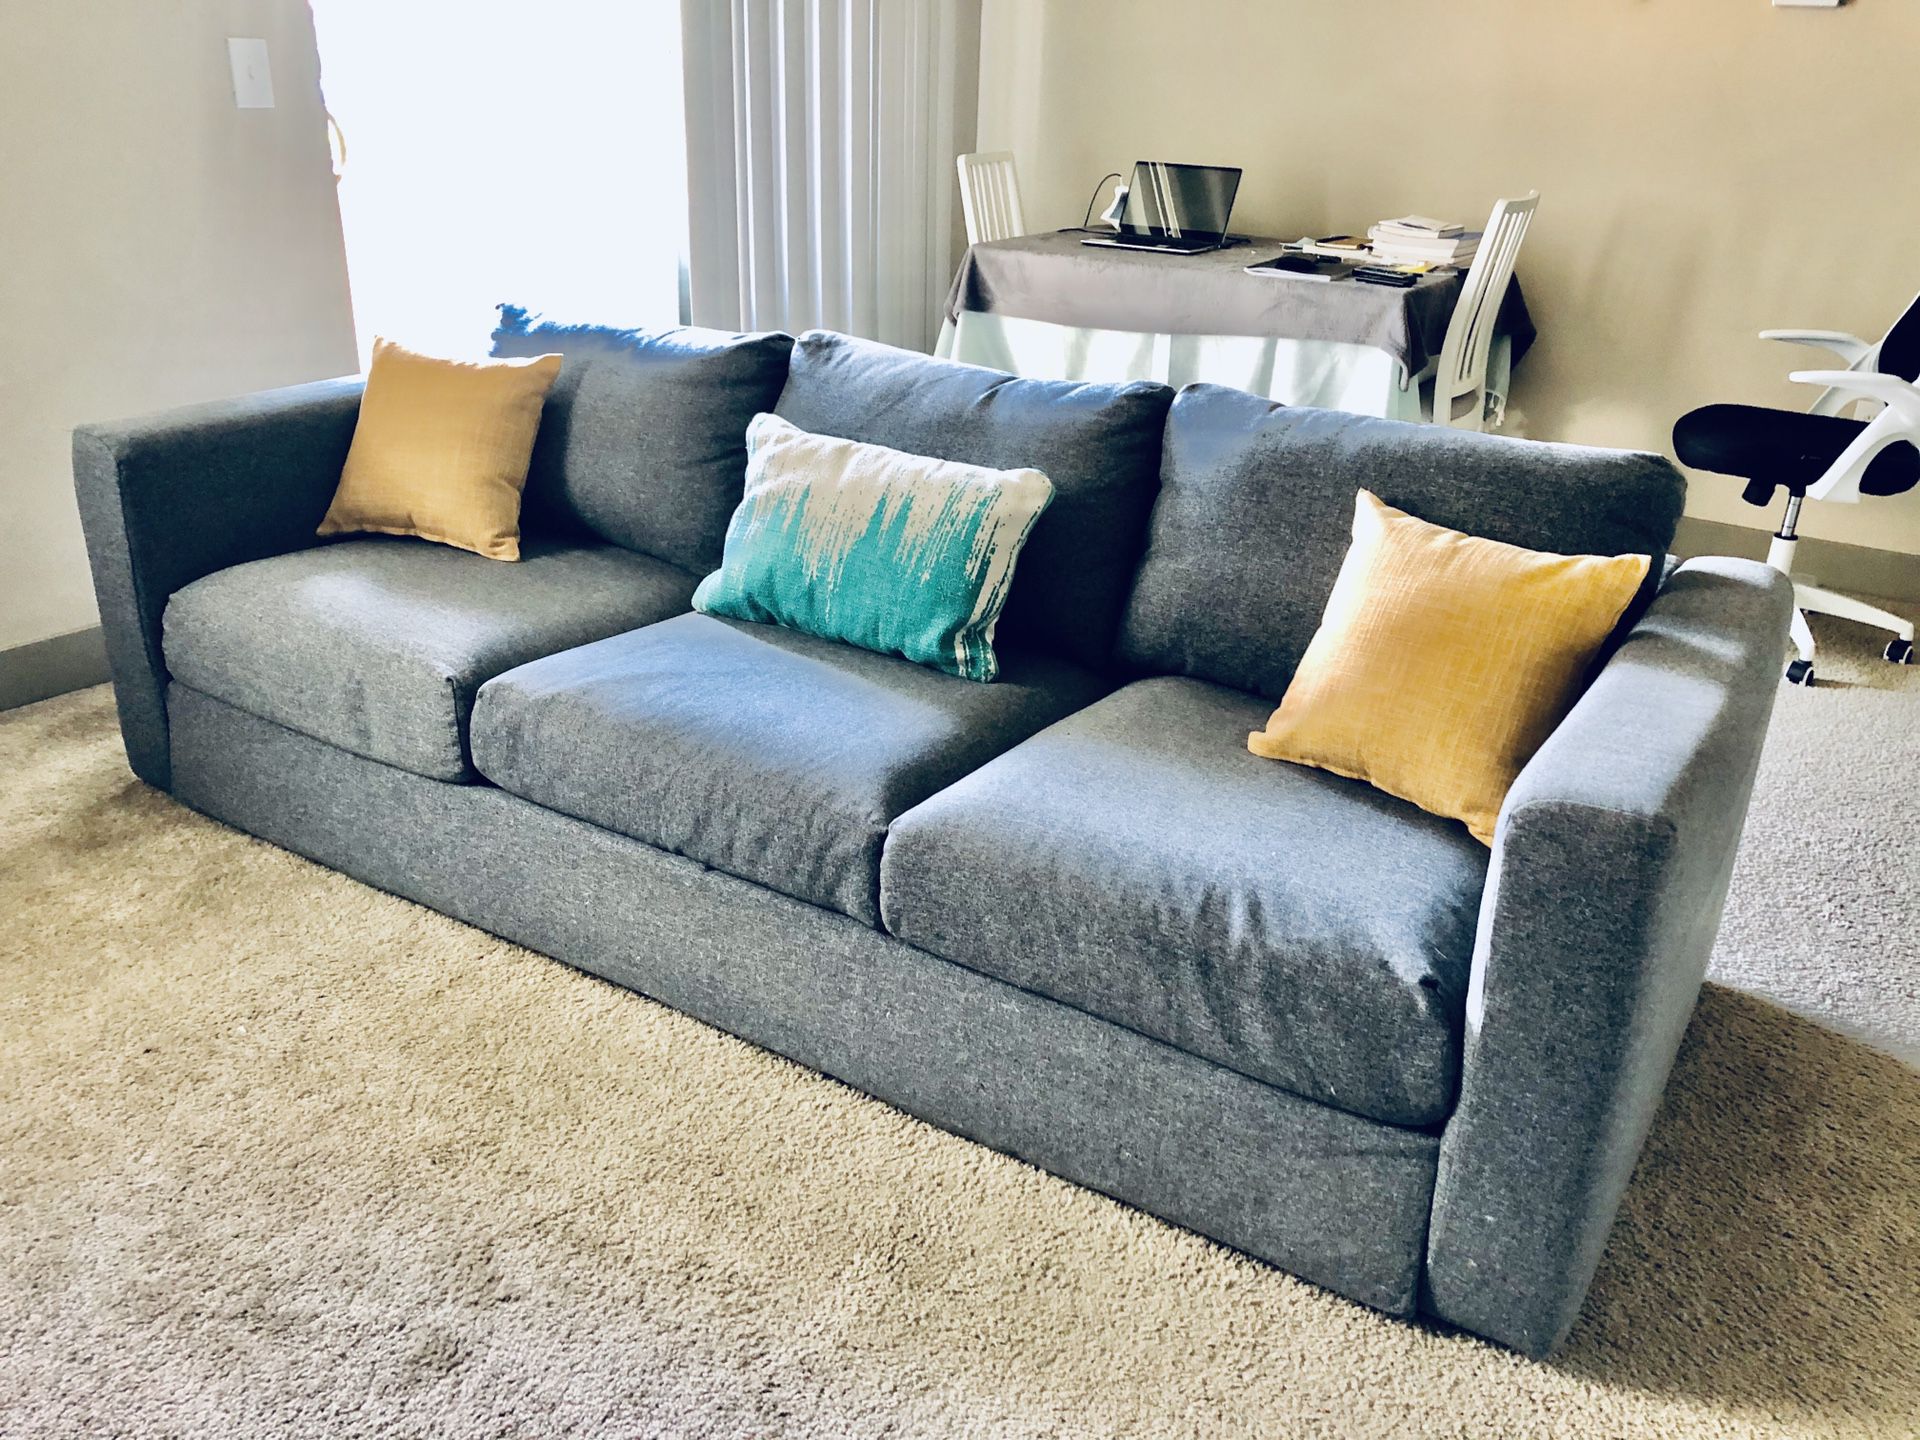 Sofa for sale (ikea - vimle)